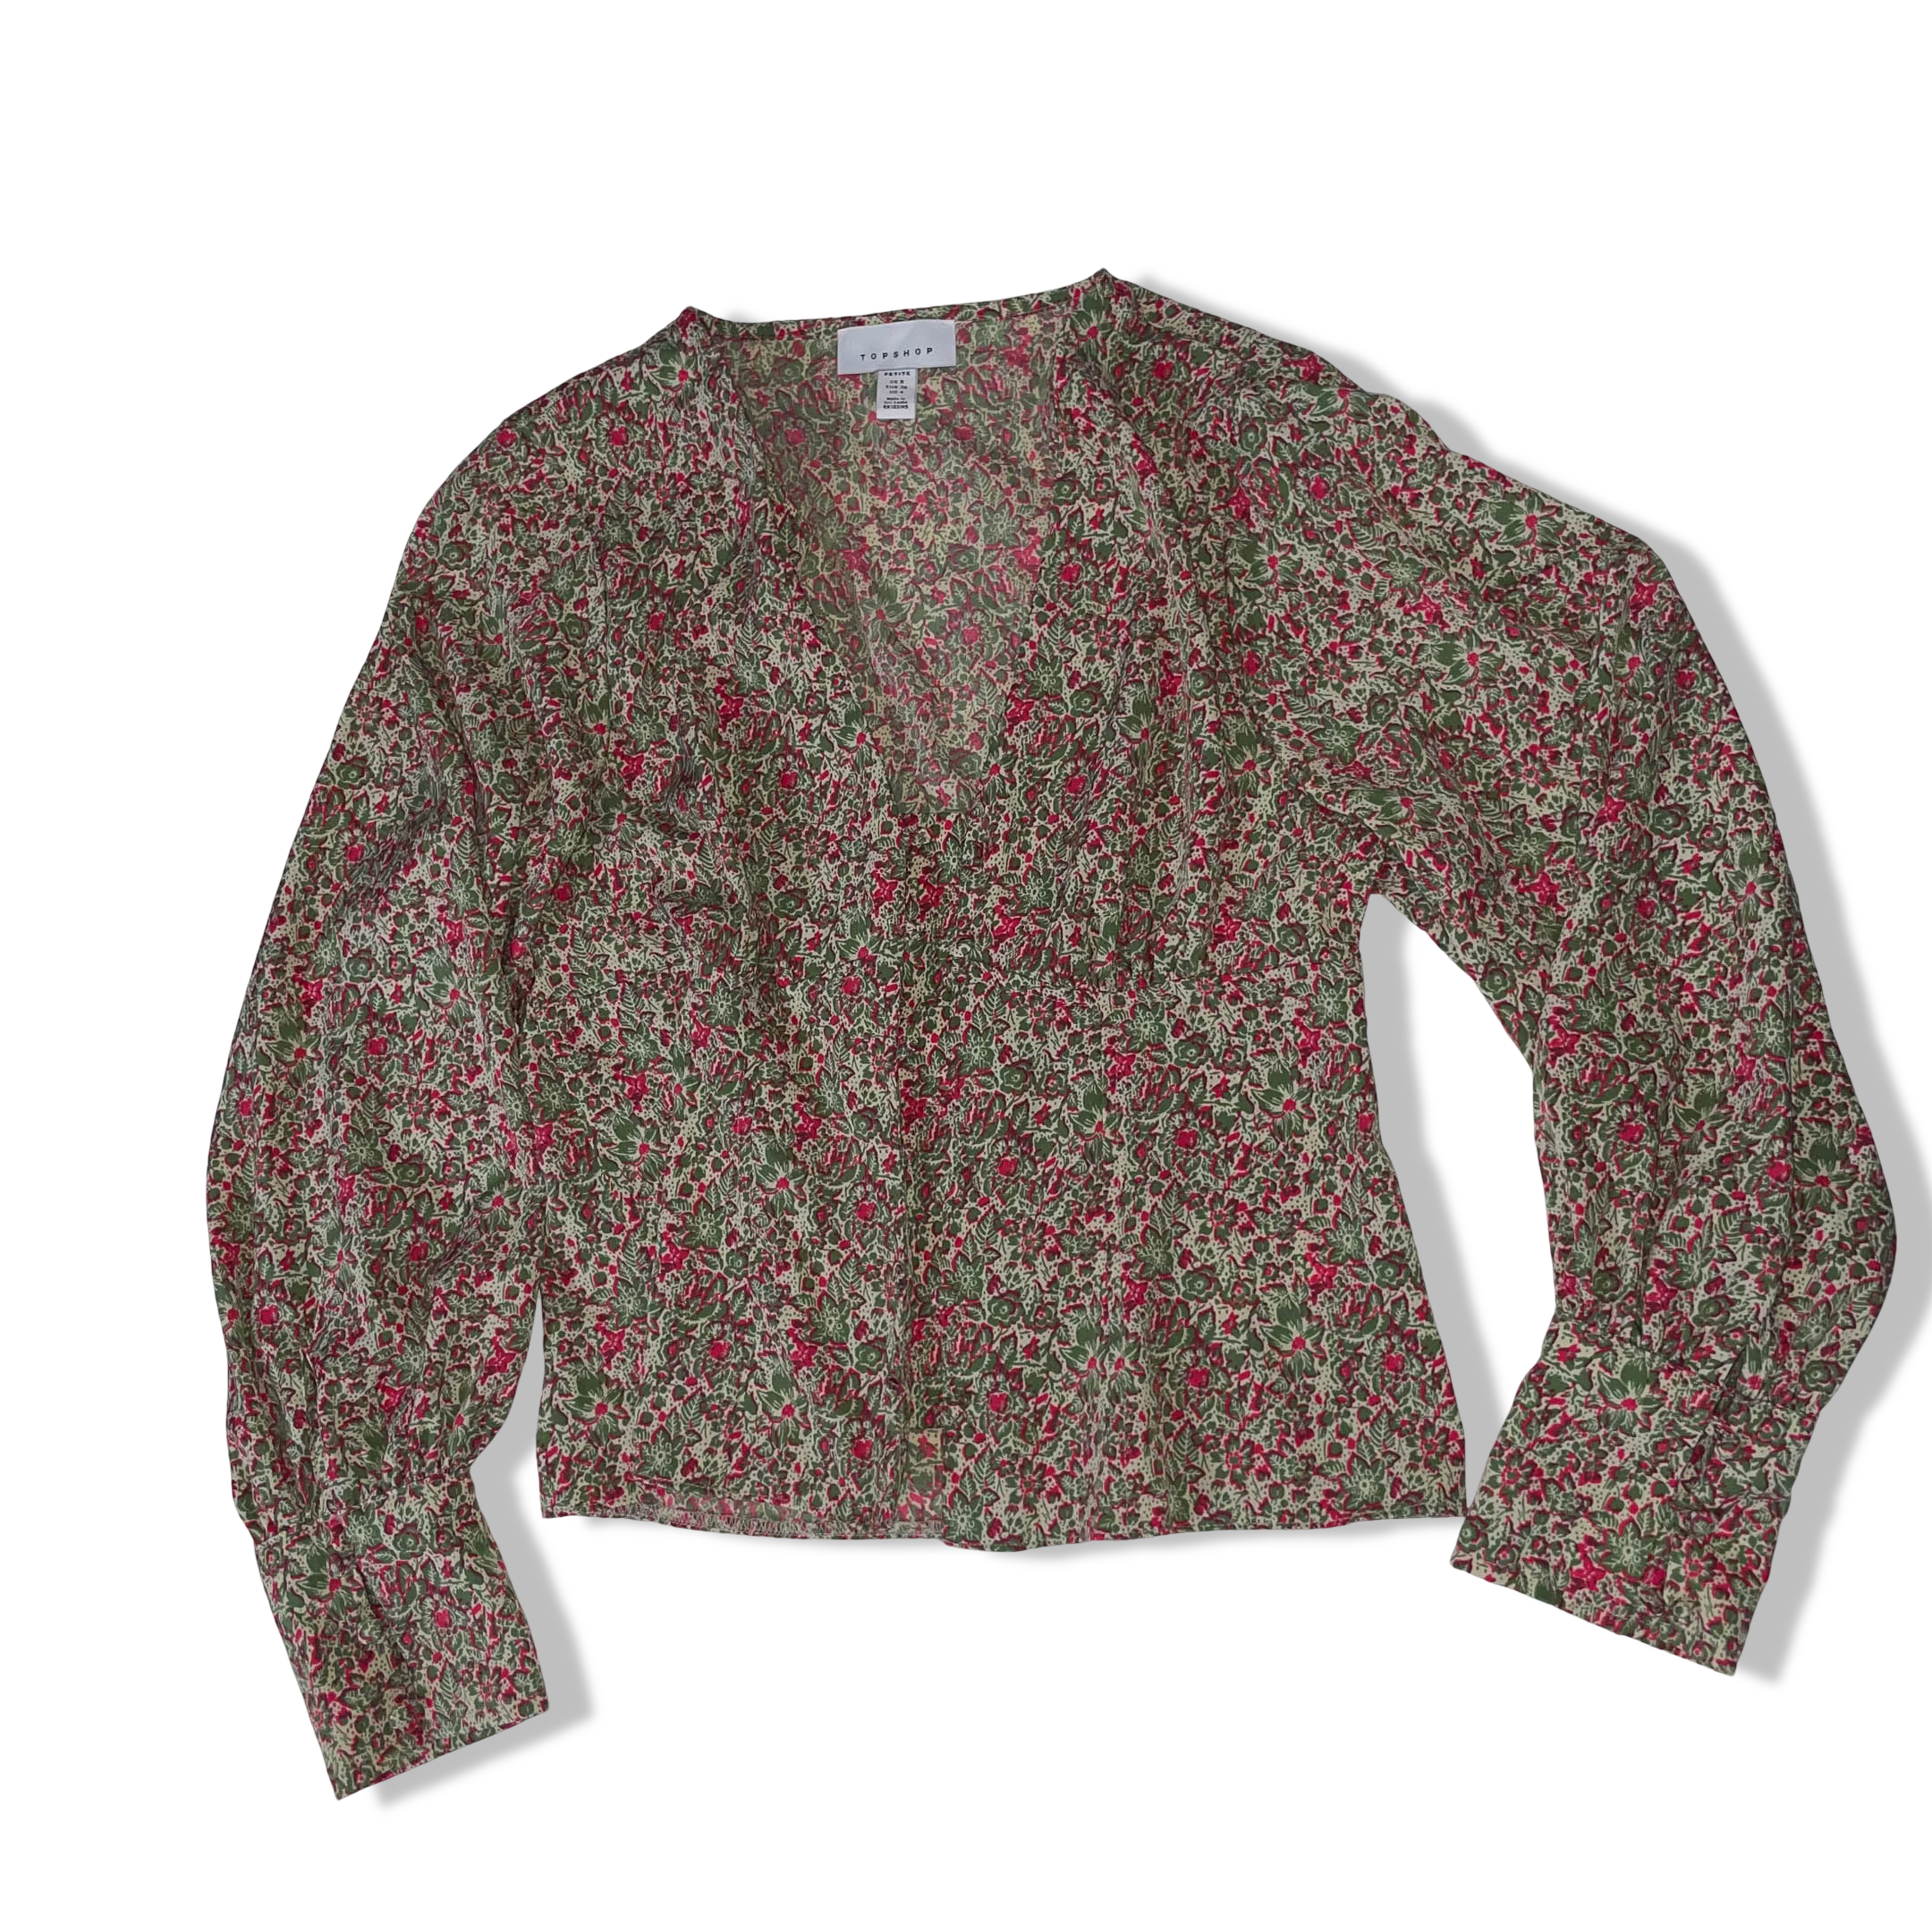 Topshop women's green & red floral long sleeve vneck blouse UK 8 EU 36| SKU 3684